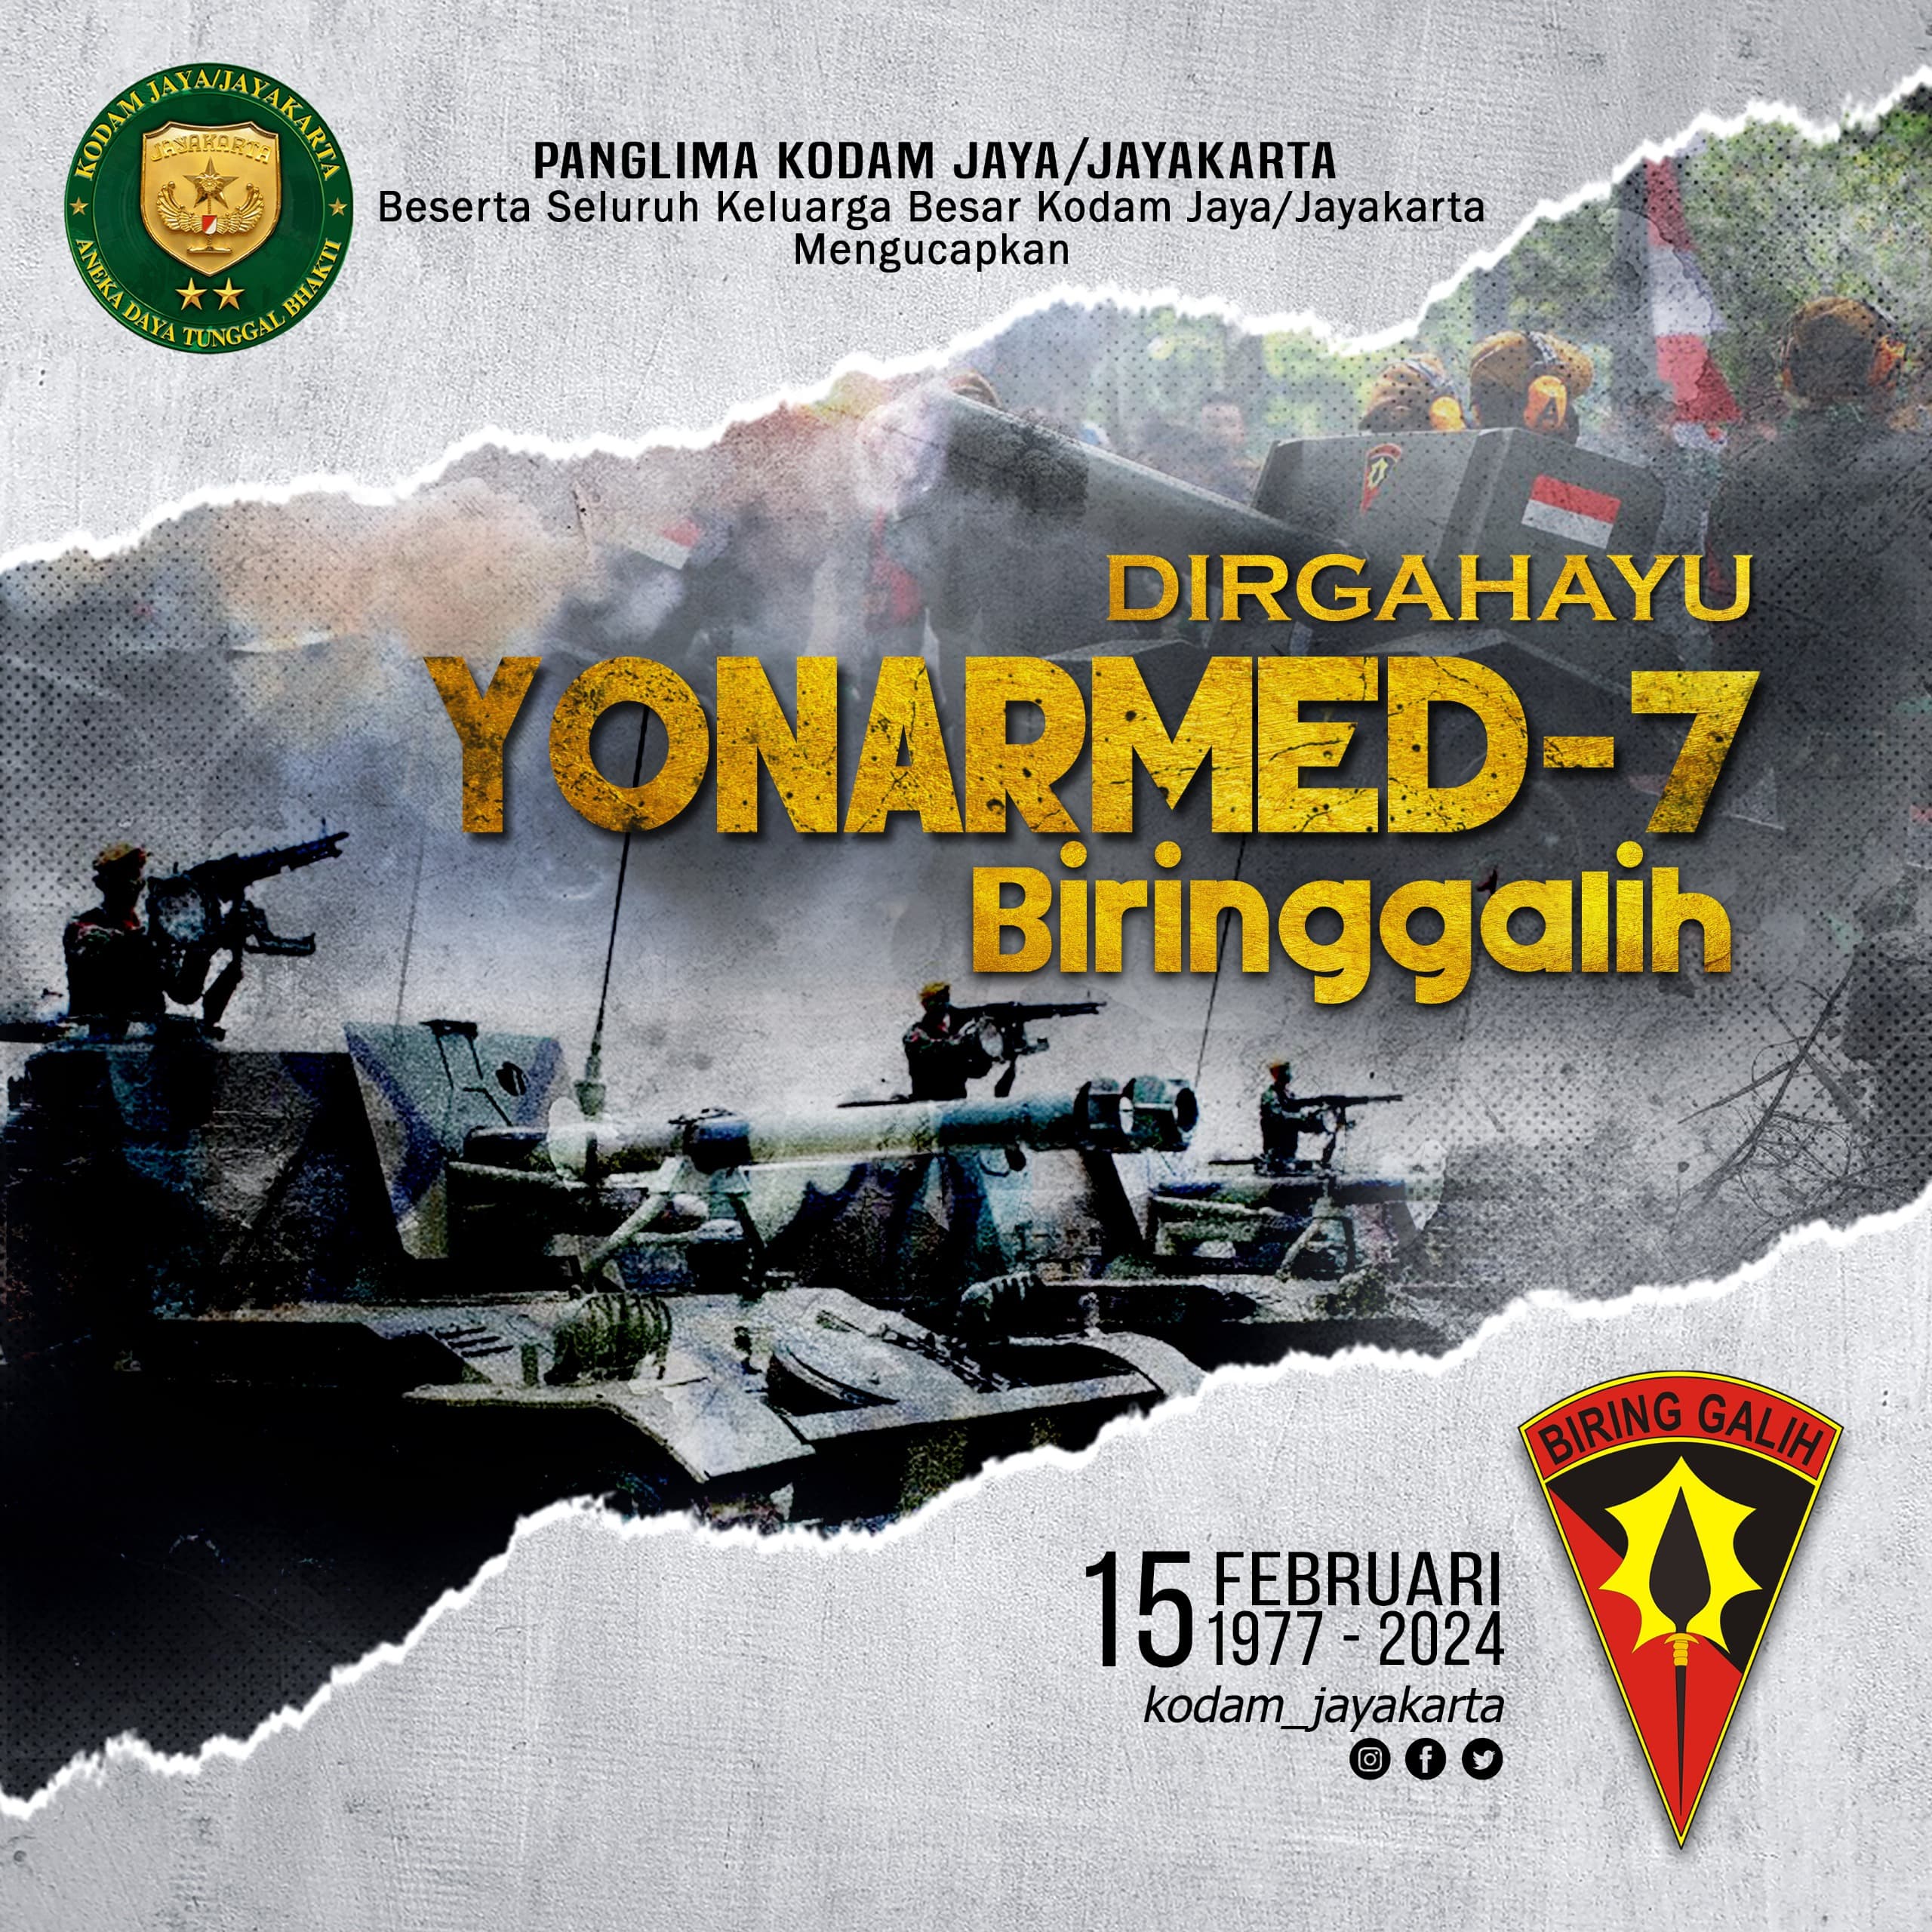 Dirgahayu Batalyon Armed 7/Biringgalih